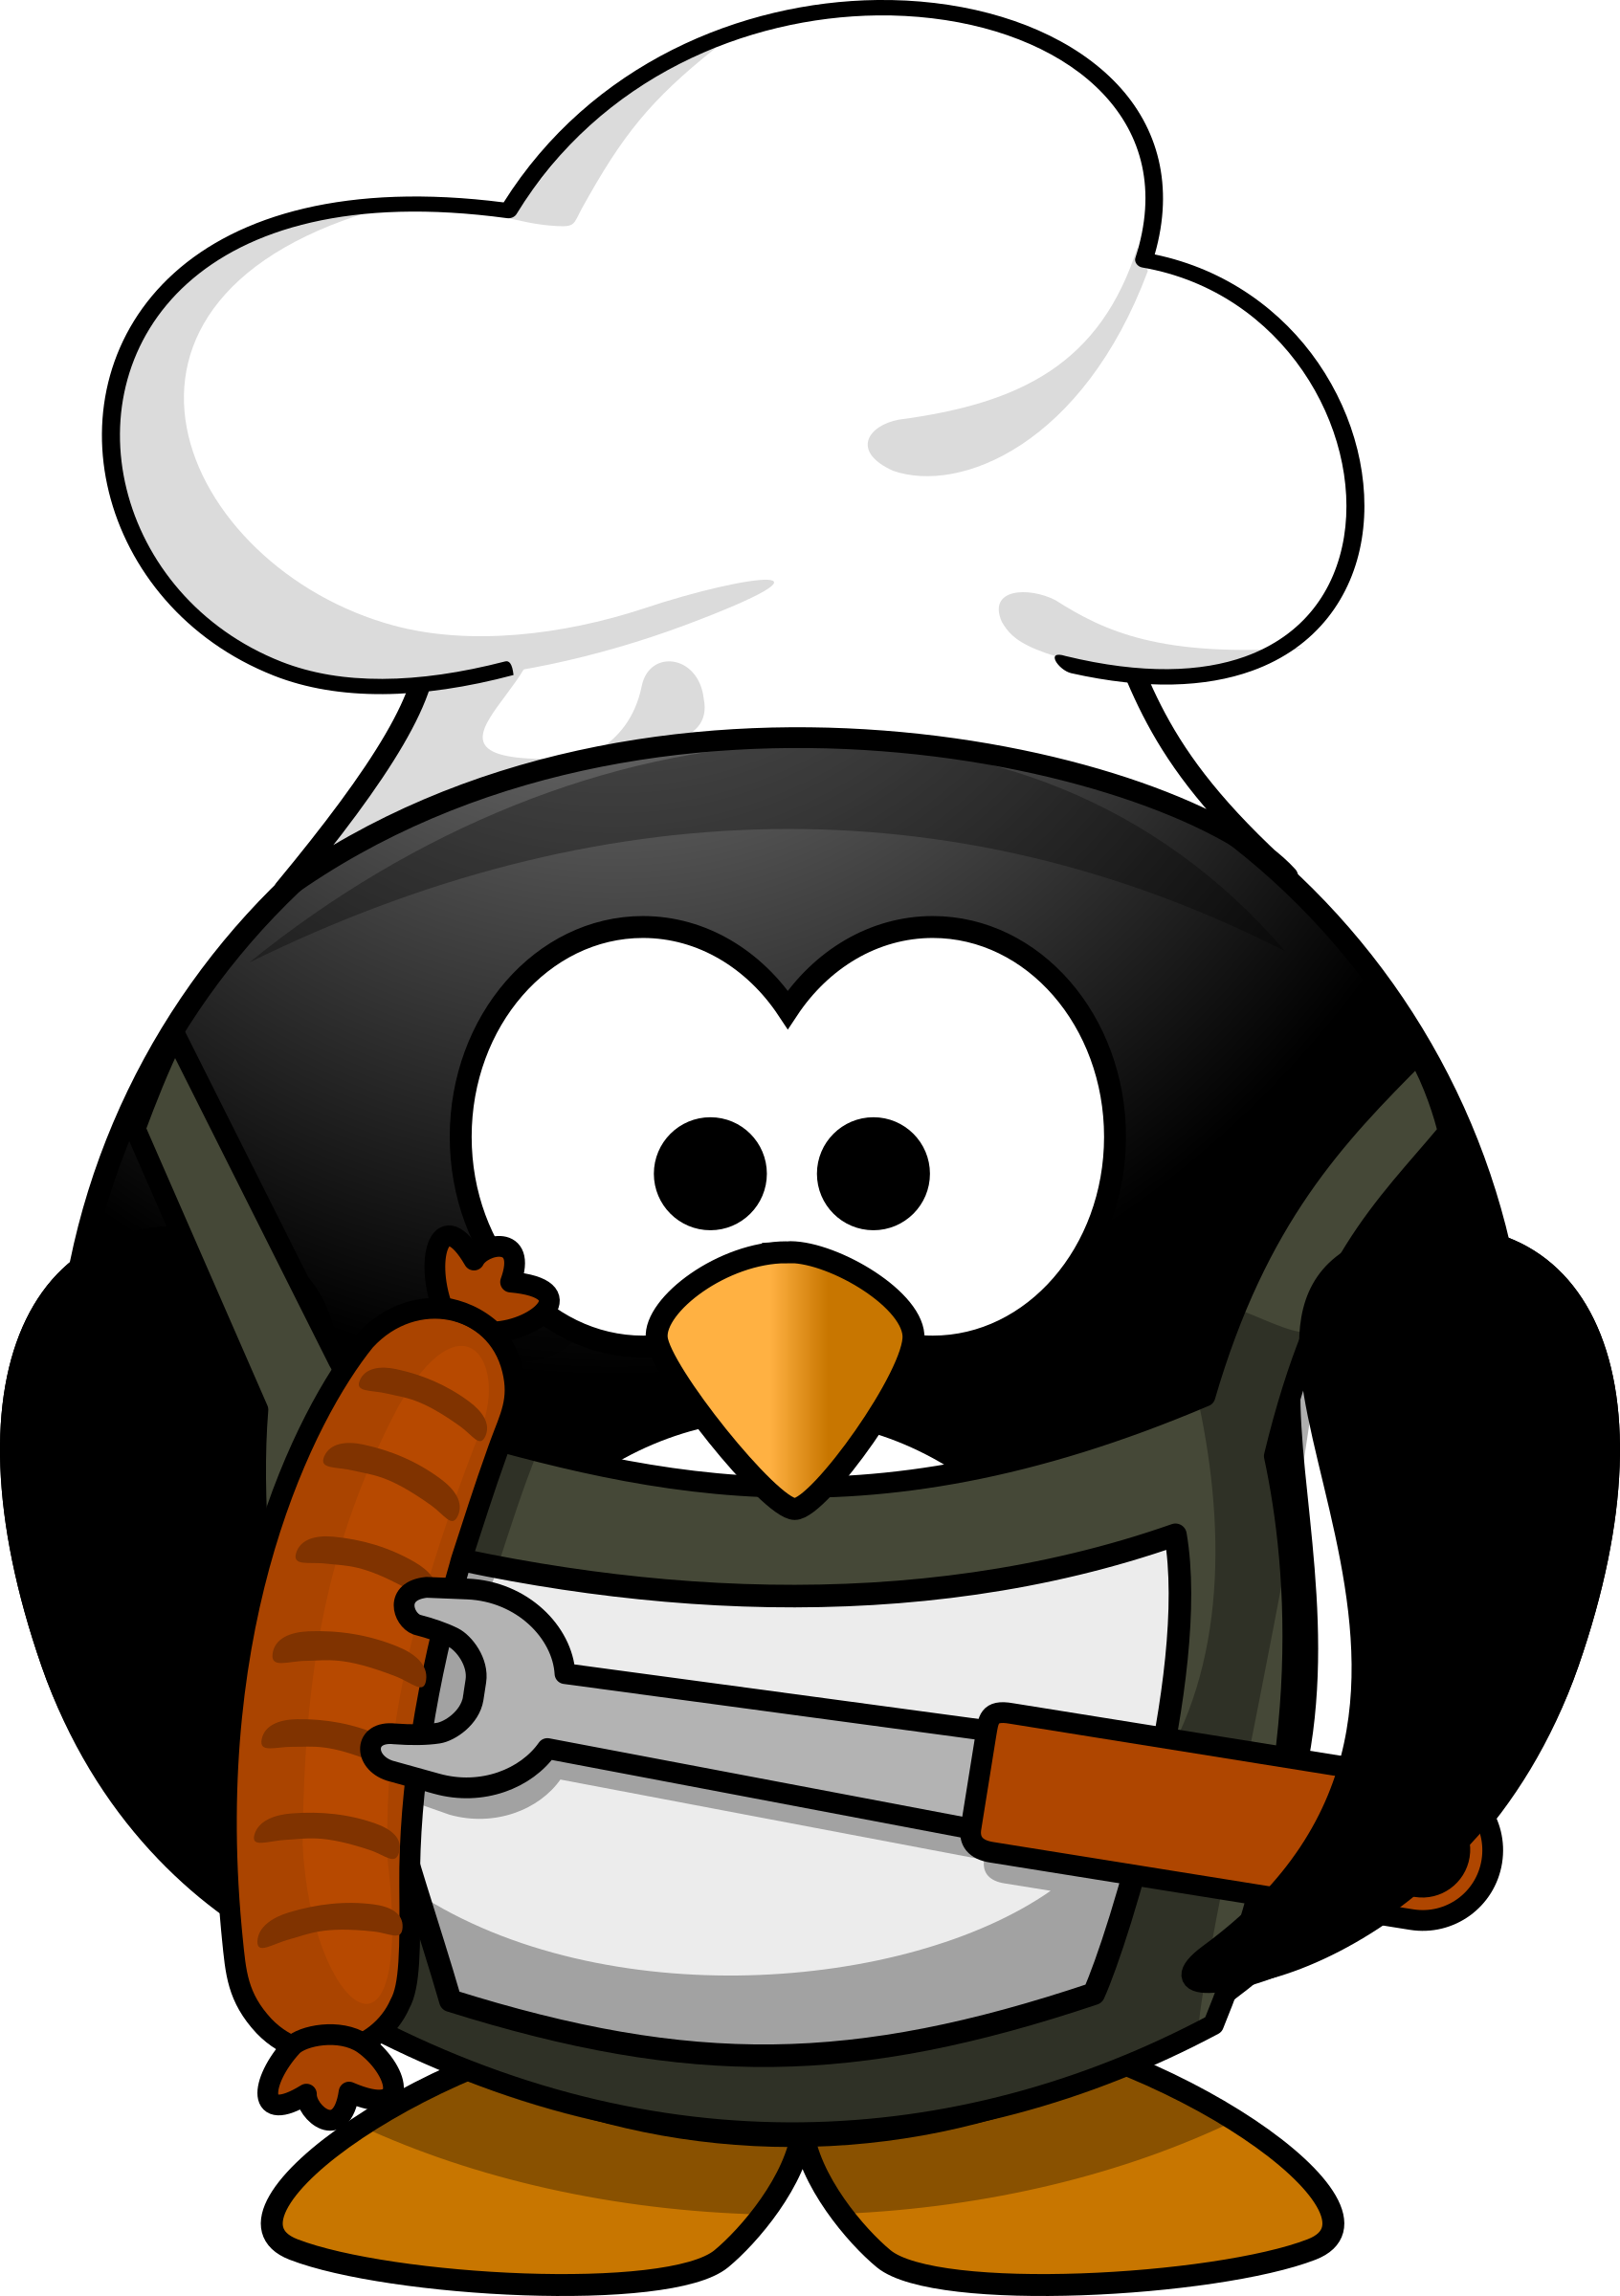 Grilling clipart logo. Penguin big image png